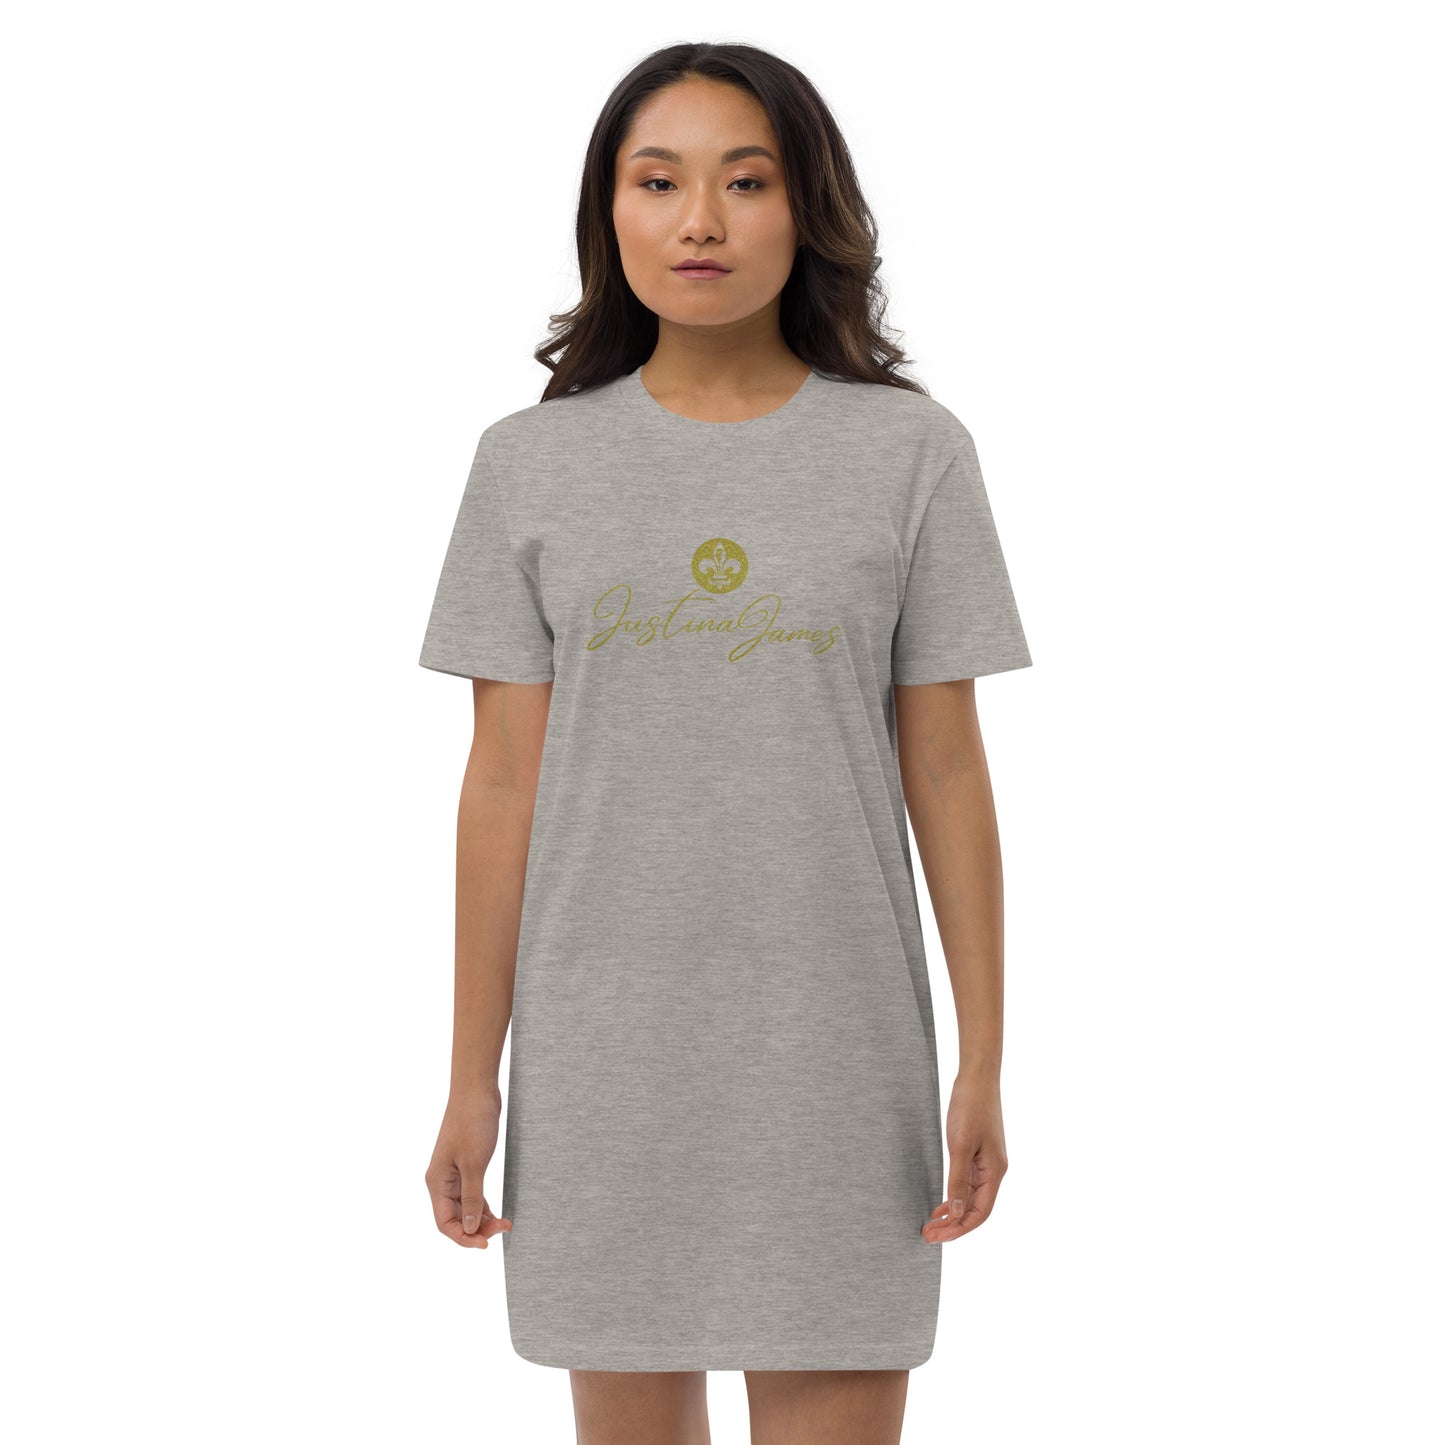 Justina James Organic cotton t-shirt dress